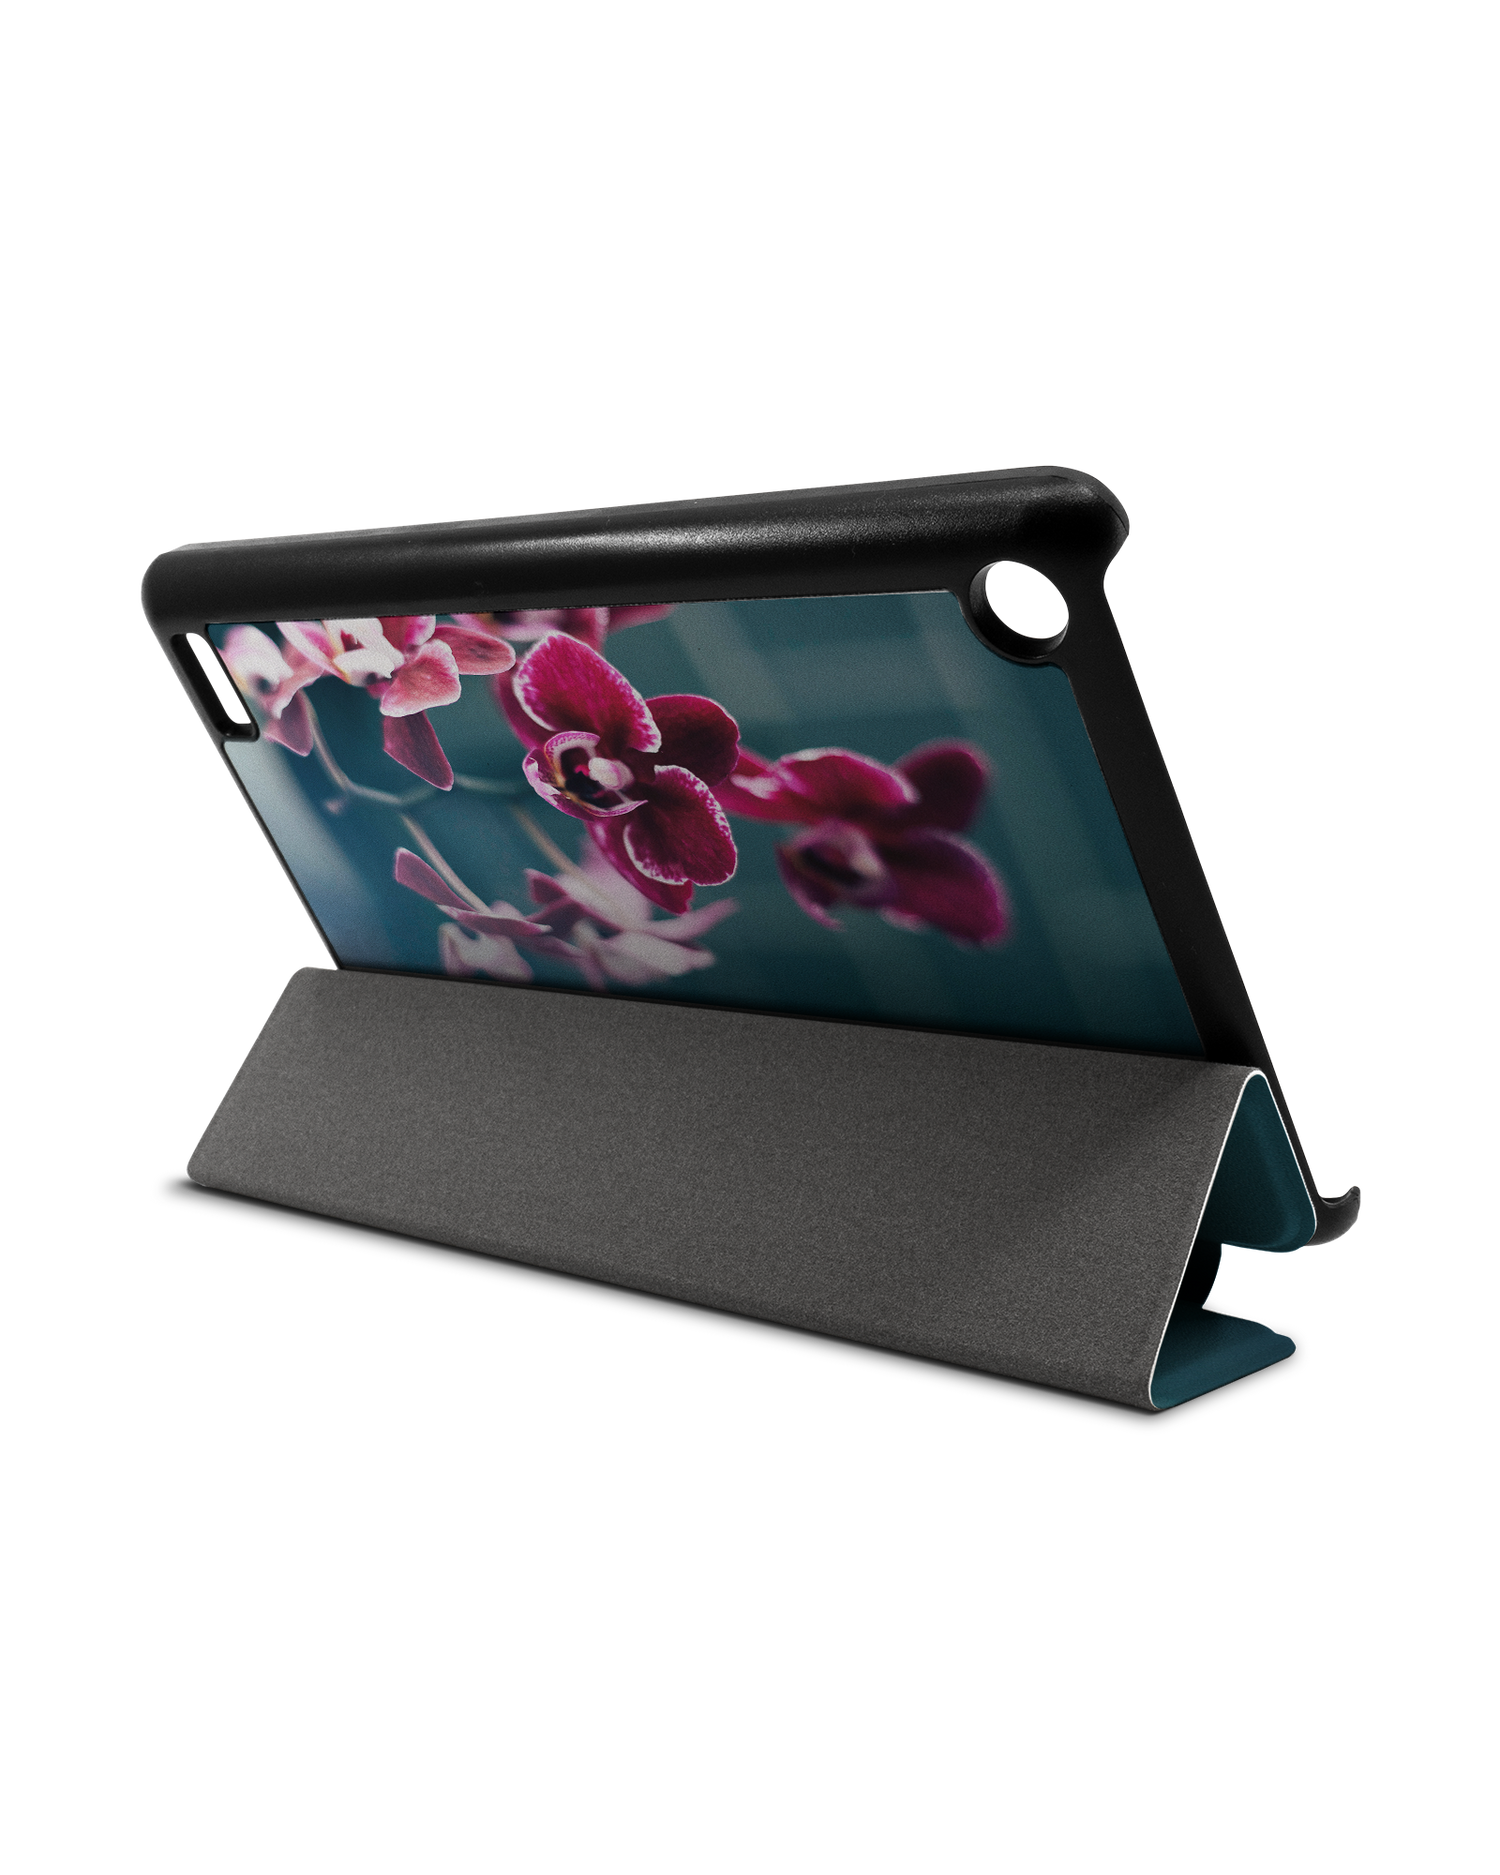 Orchid Tablet Smart Case für Amazon Fire 7: Aufgestellt im Querformat